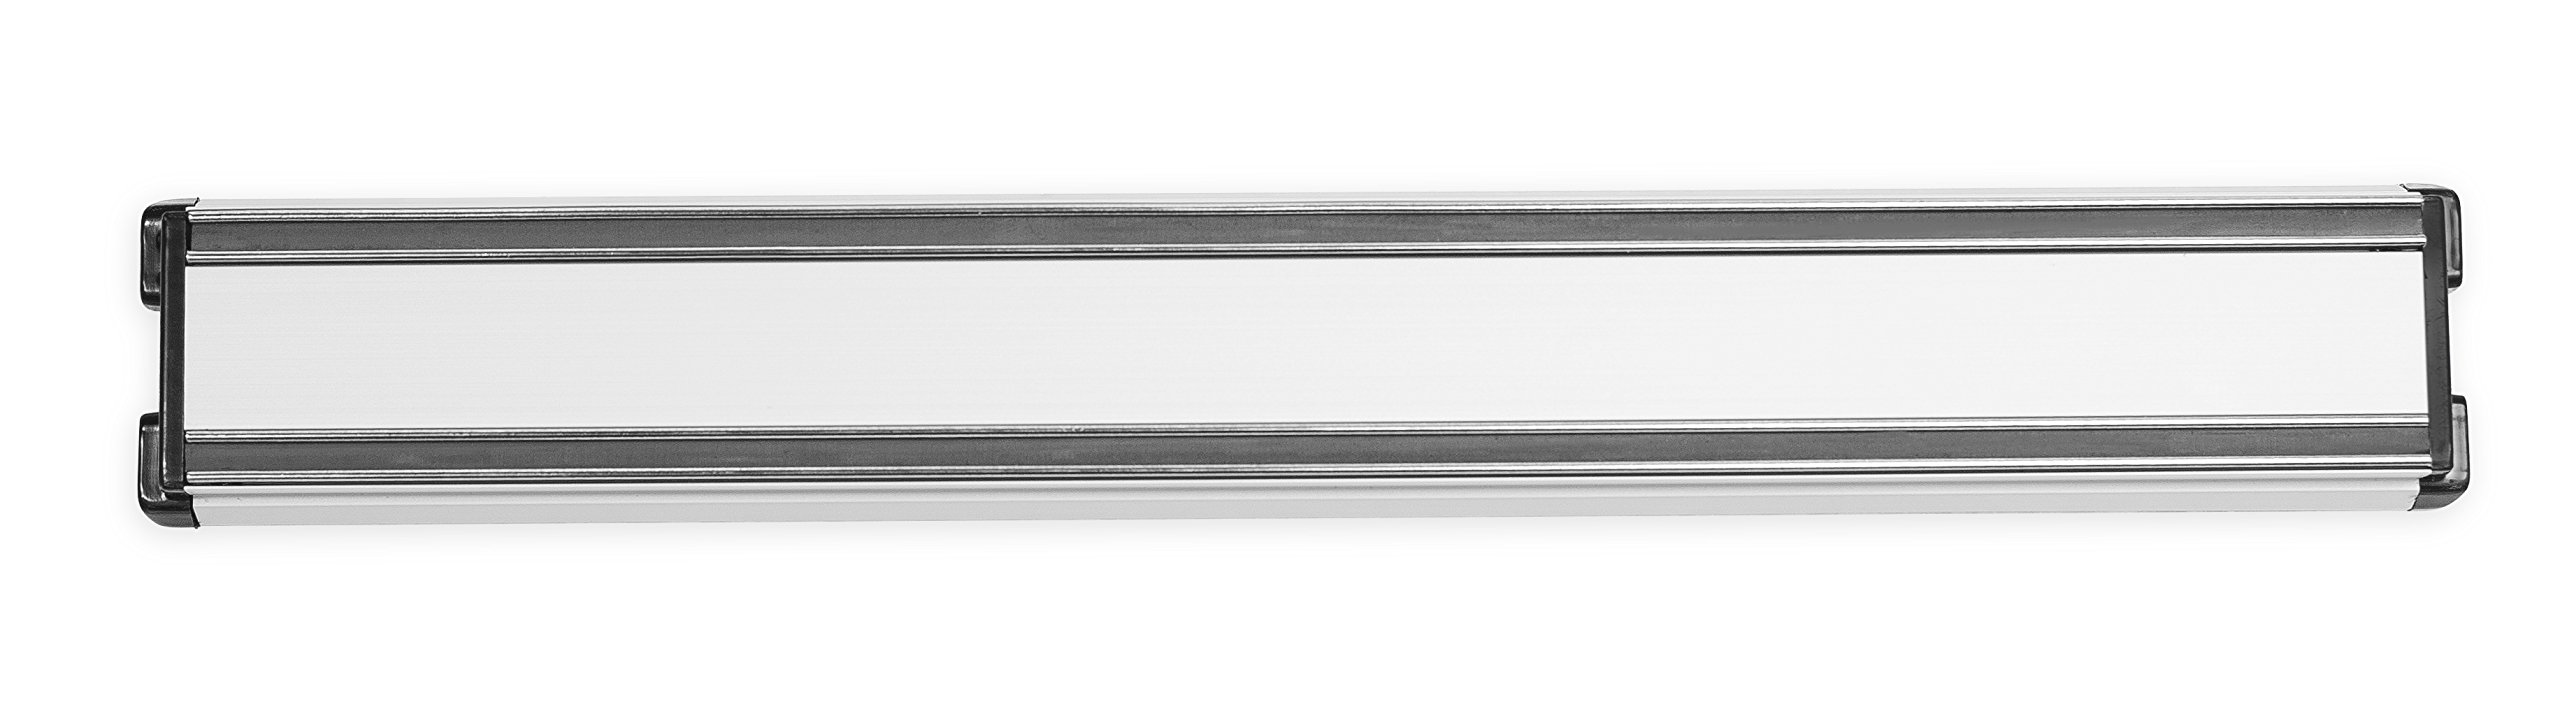 Internet’s Best Magnetic Knife Rack - 12.5 Inch - Knife Storage Bar Strip - Aluminum - Metal Knives, Utensils and Kitchen Sets Holder